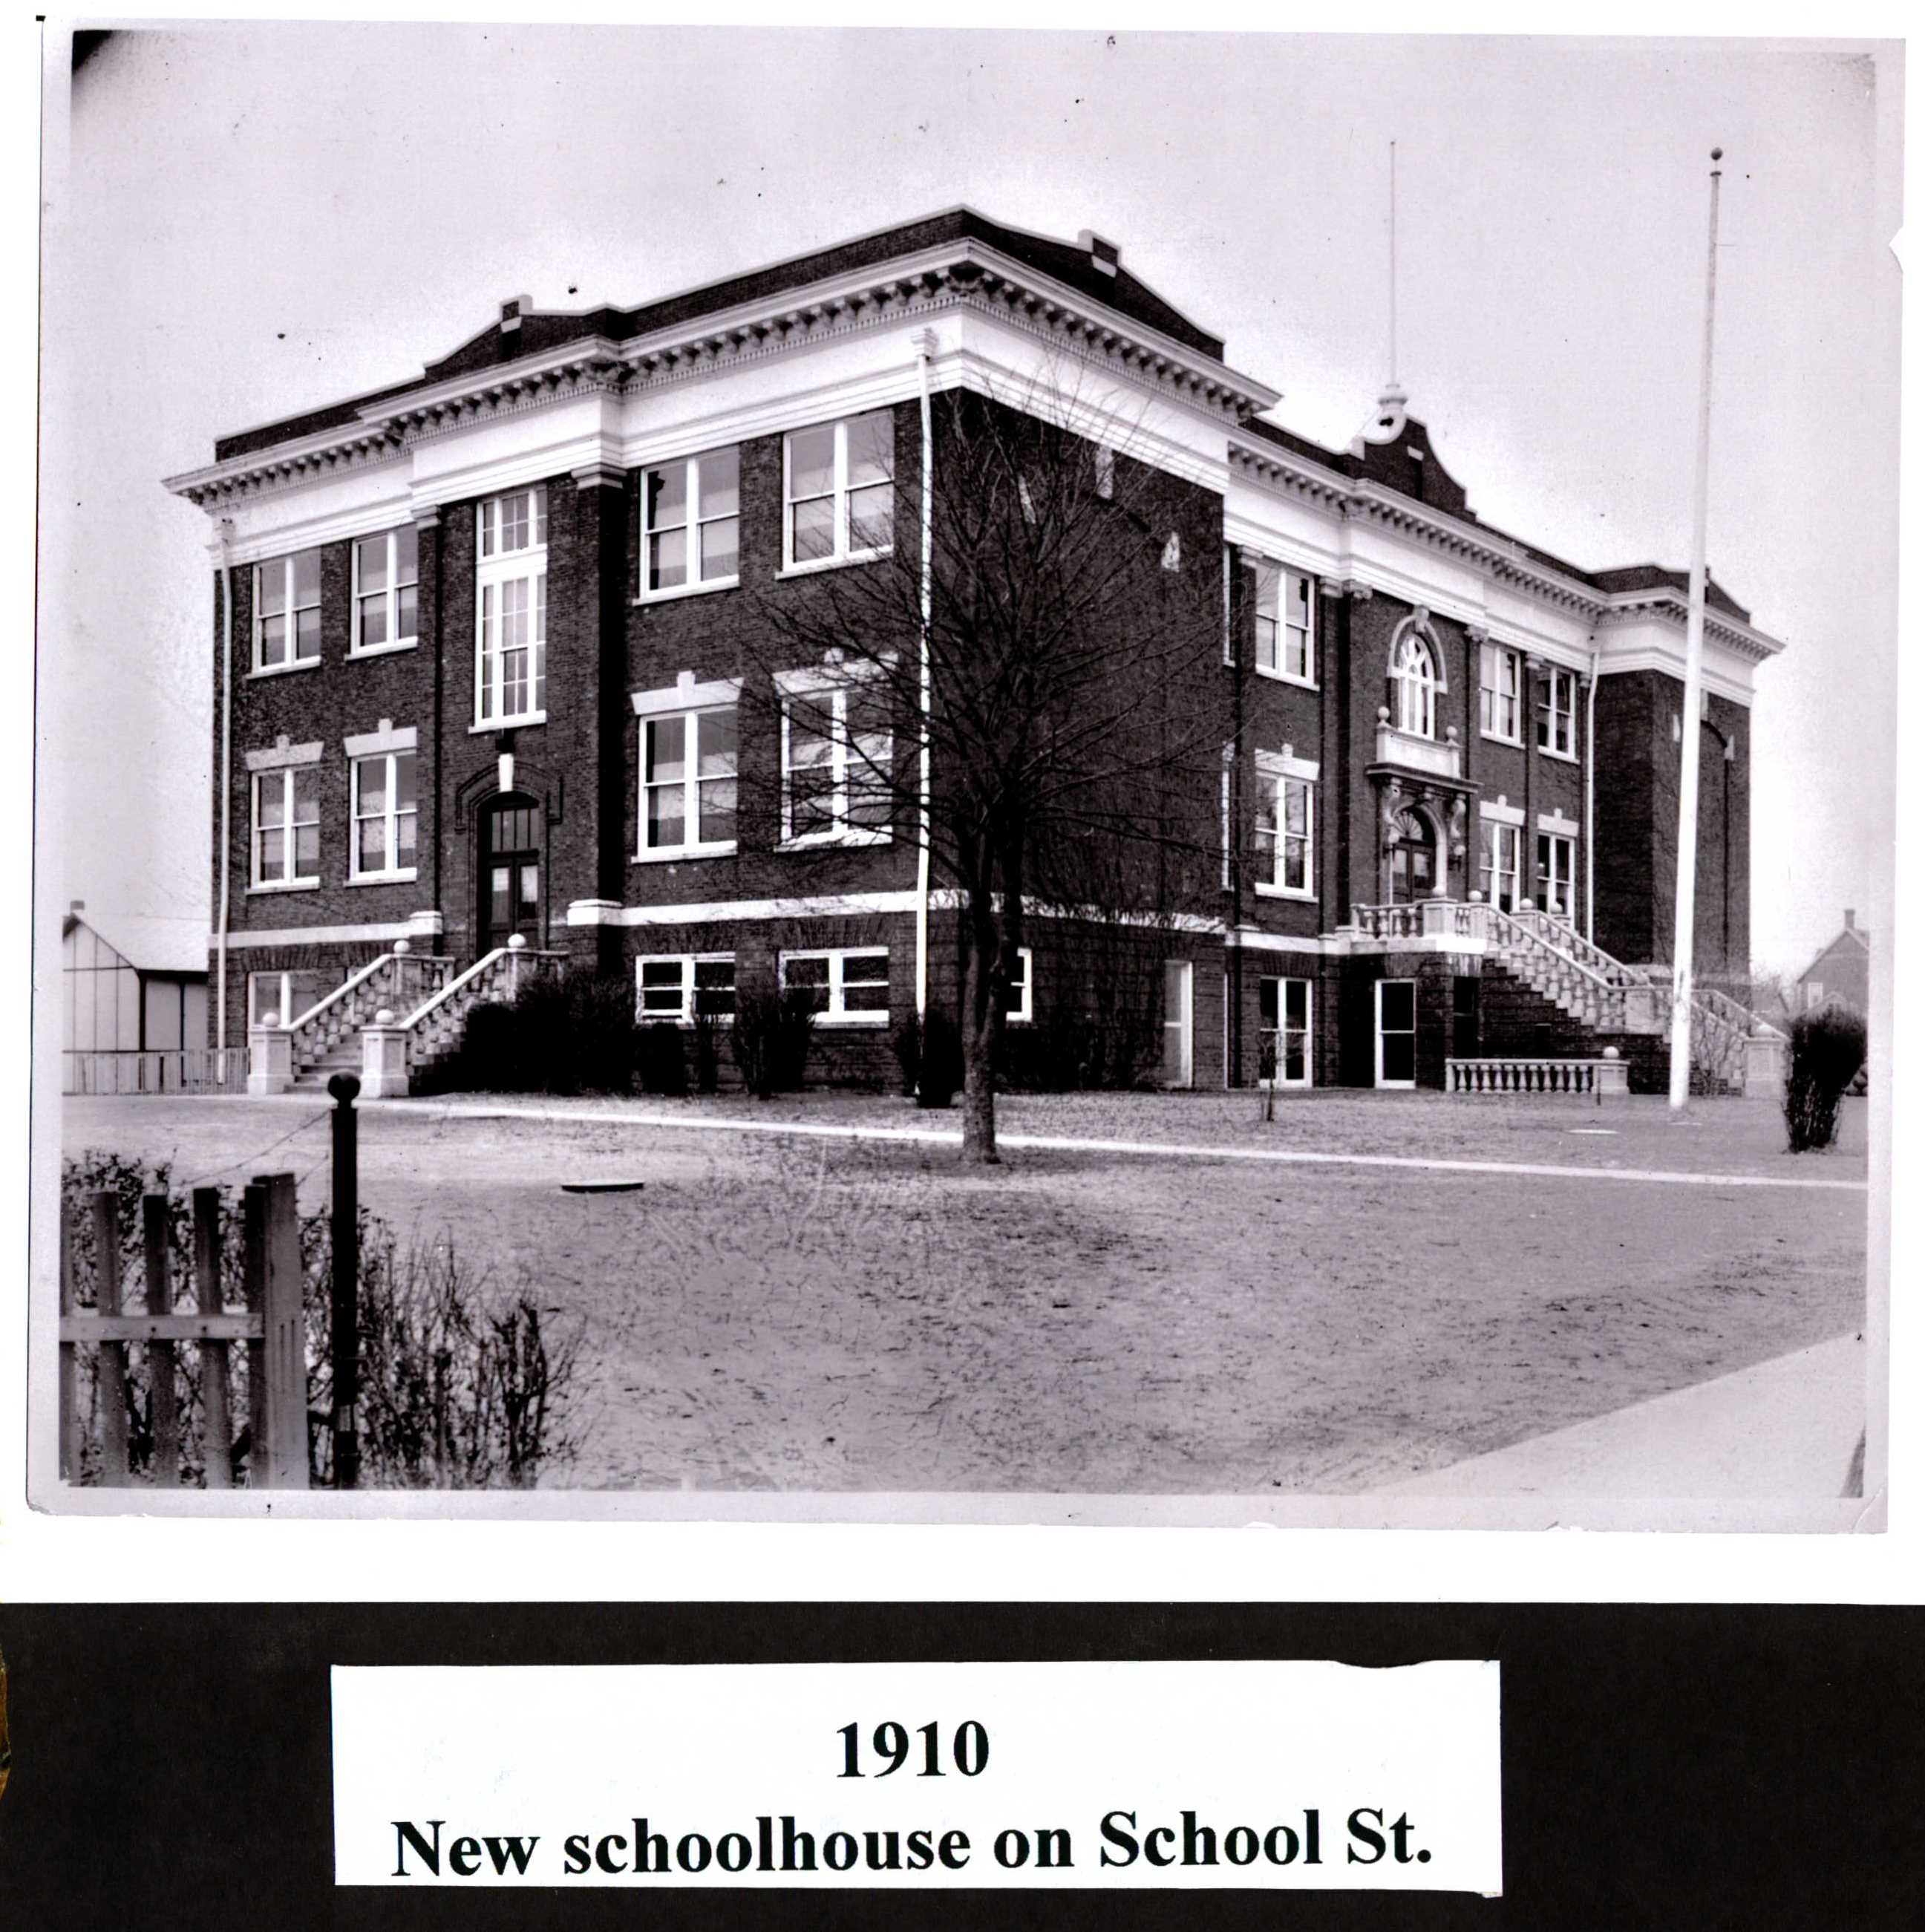 School Street School